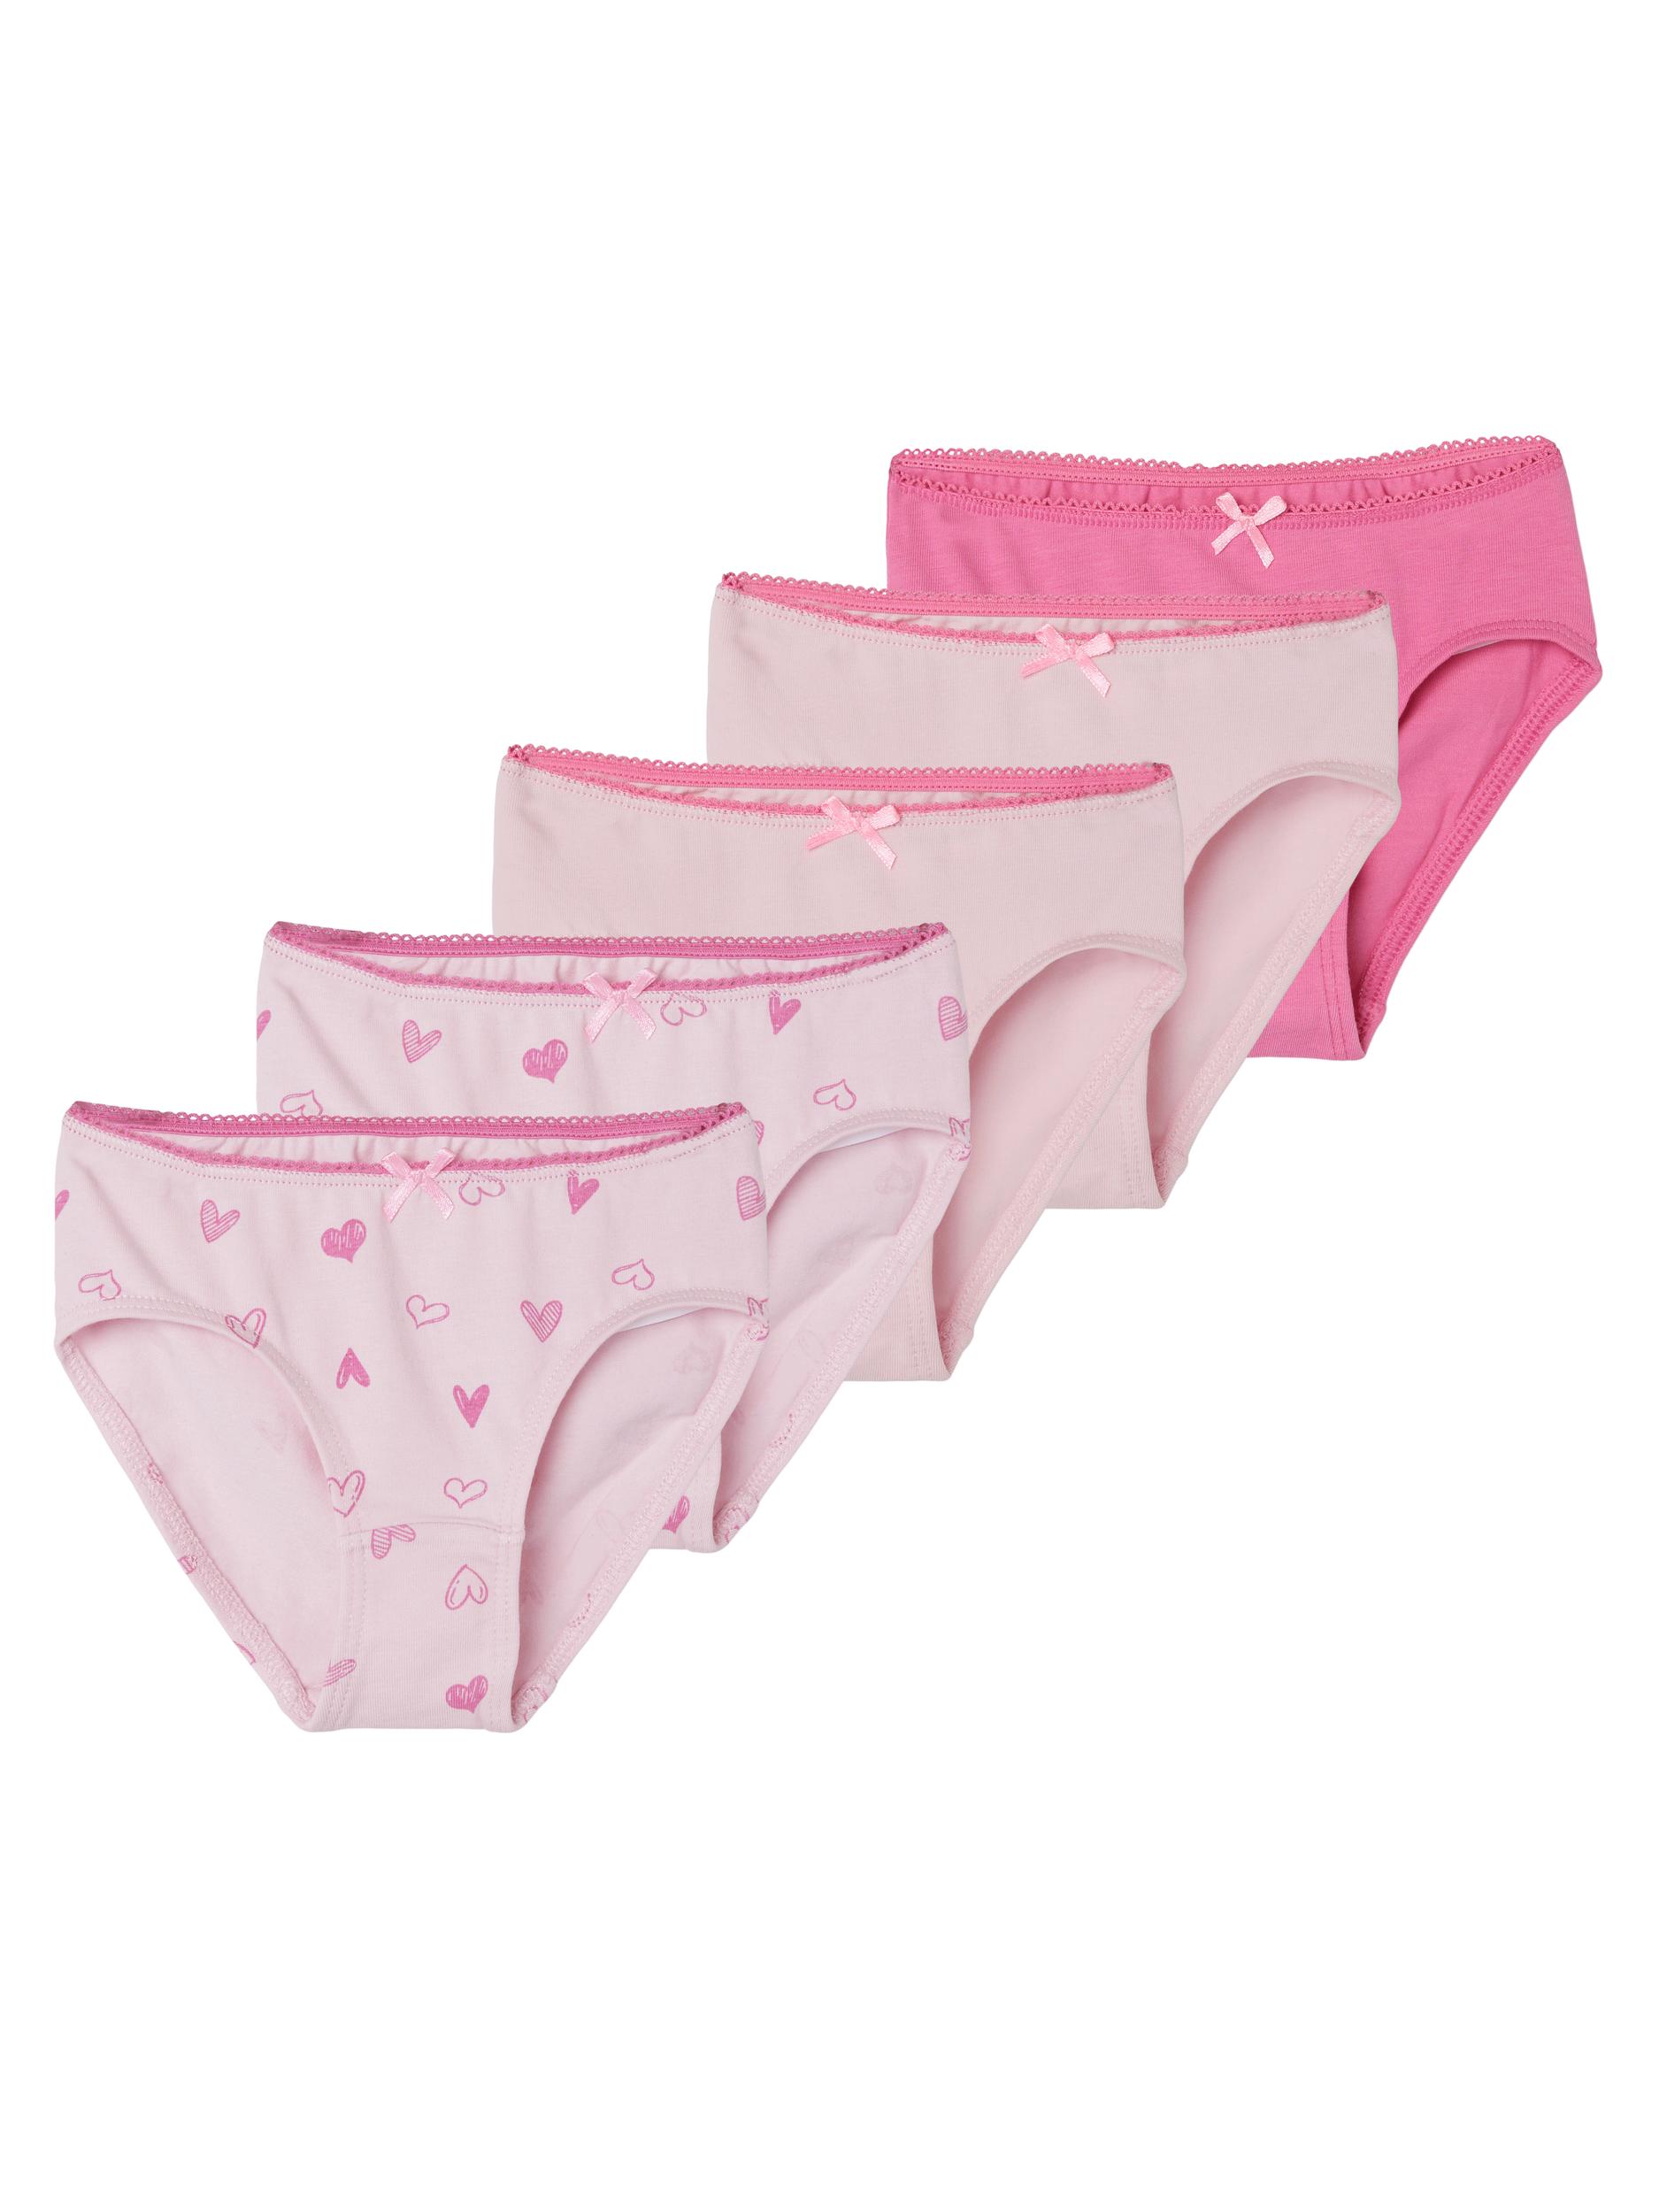 Name It KORNELA tüdrukute aluspüksid 5 pakk, Pink cosmos Lasteriided - HellyK - Kvaliteetsed lasteriided, villariided, barefoot jalatsid